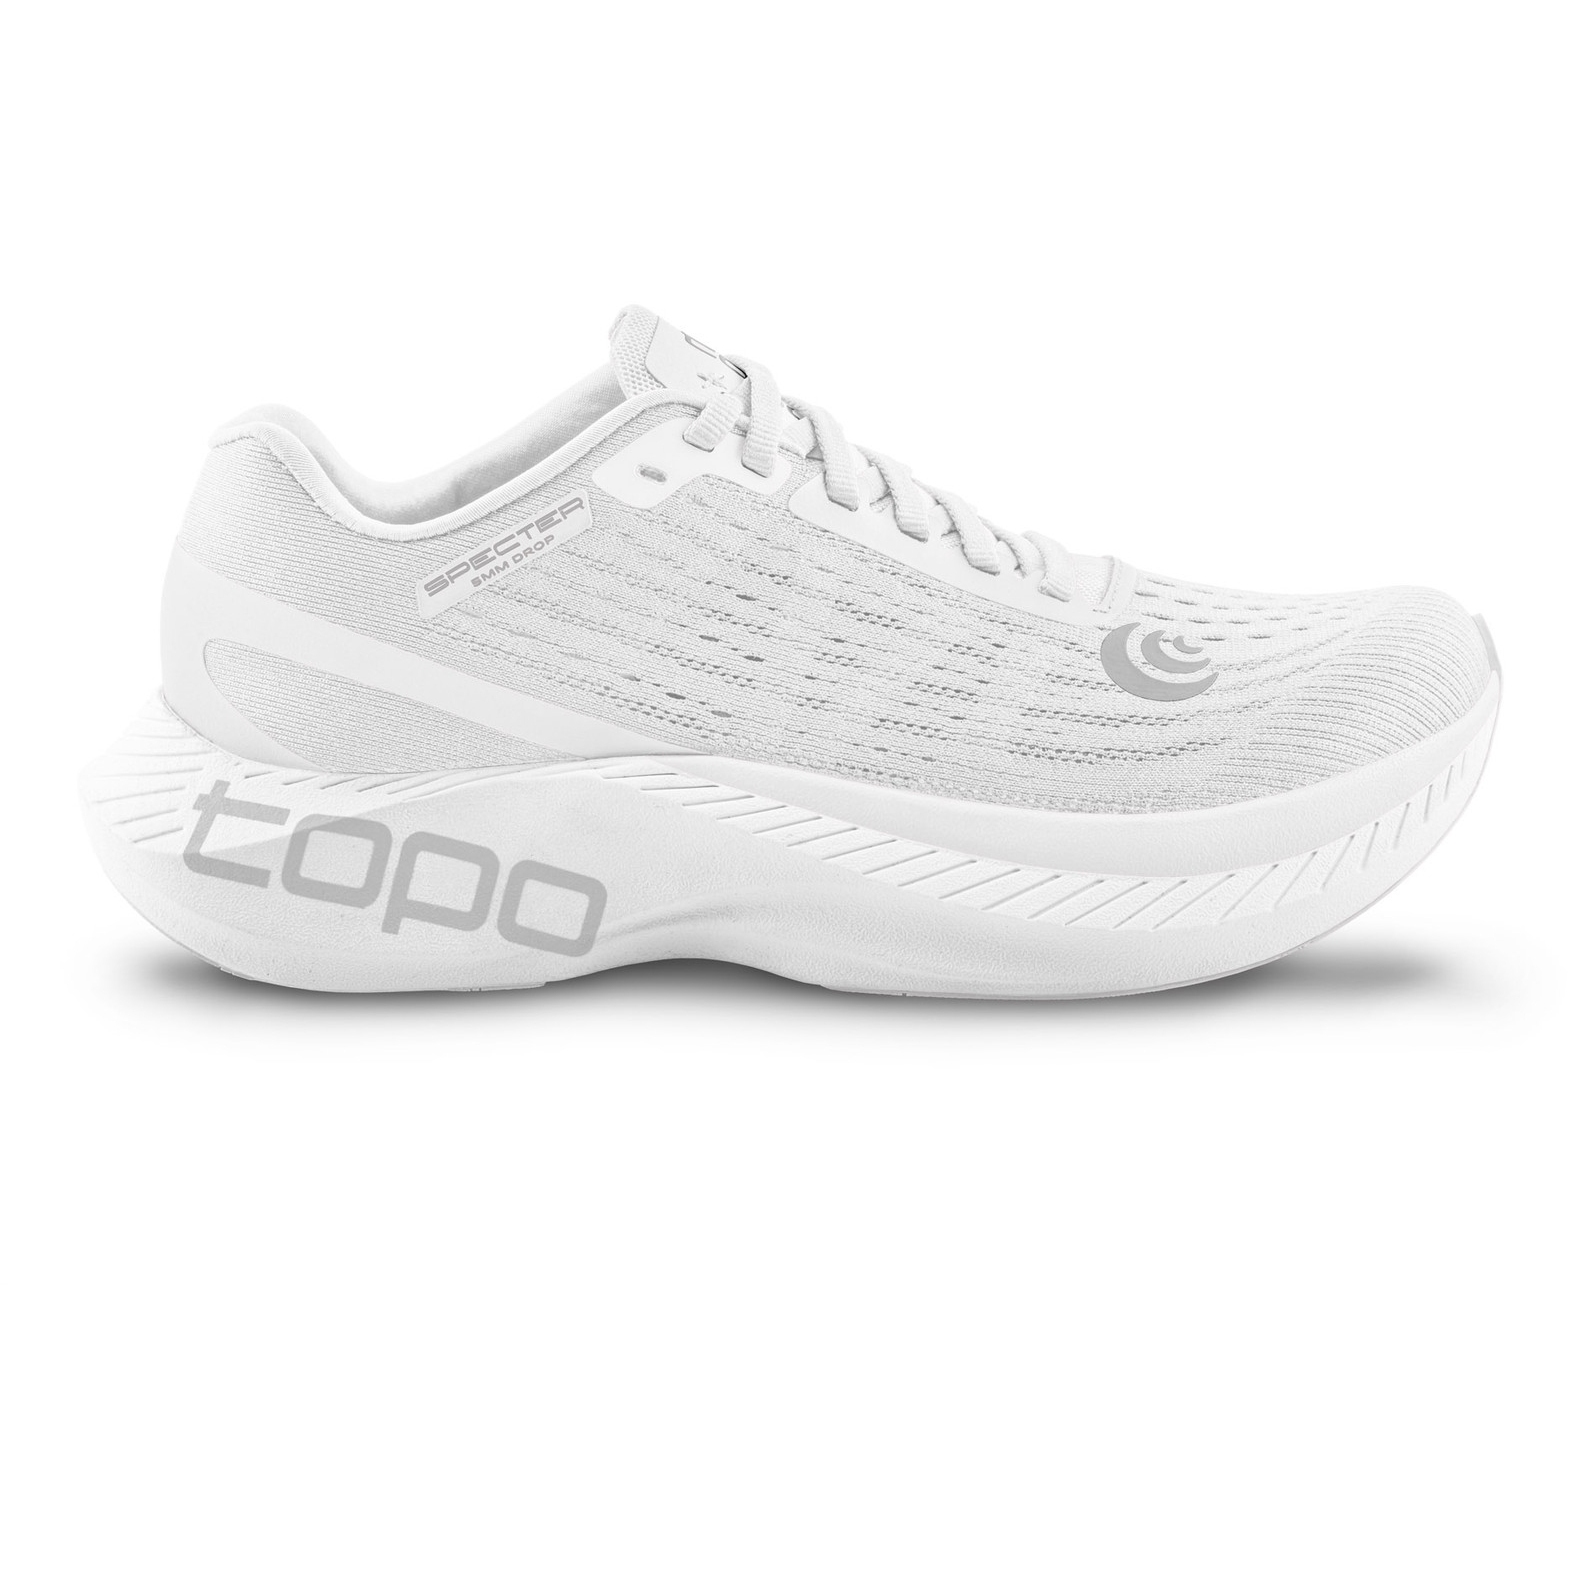 Produktbild von Topo Athletic Specter Damen Laufschuhe - weiß/grau